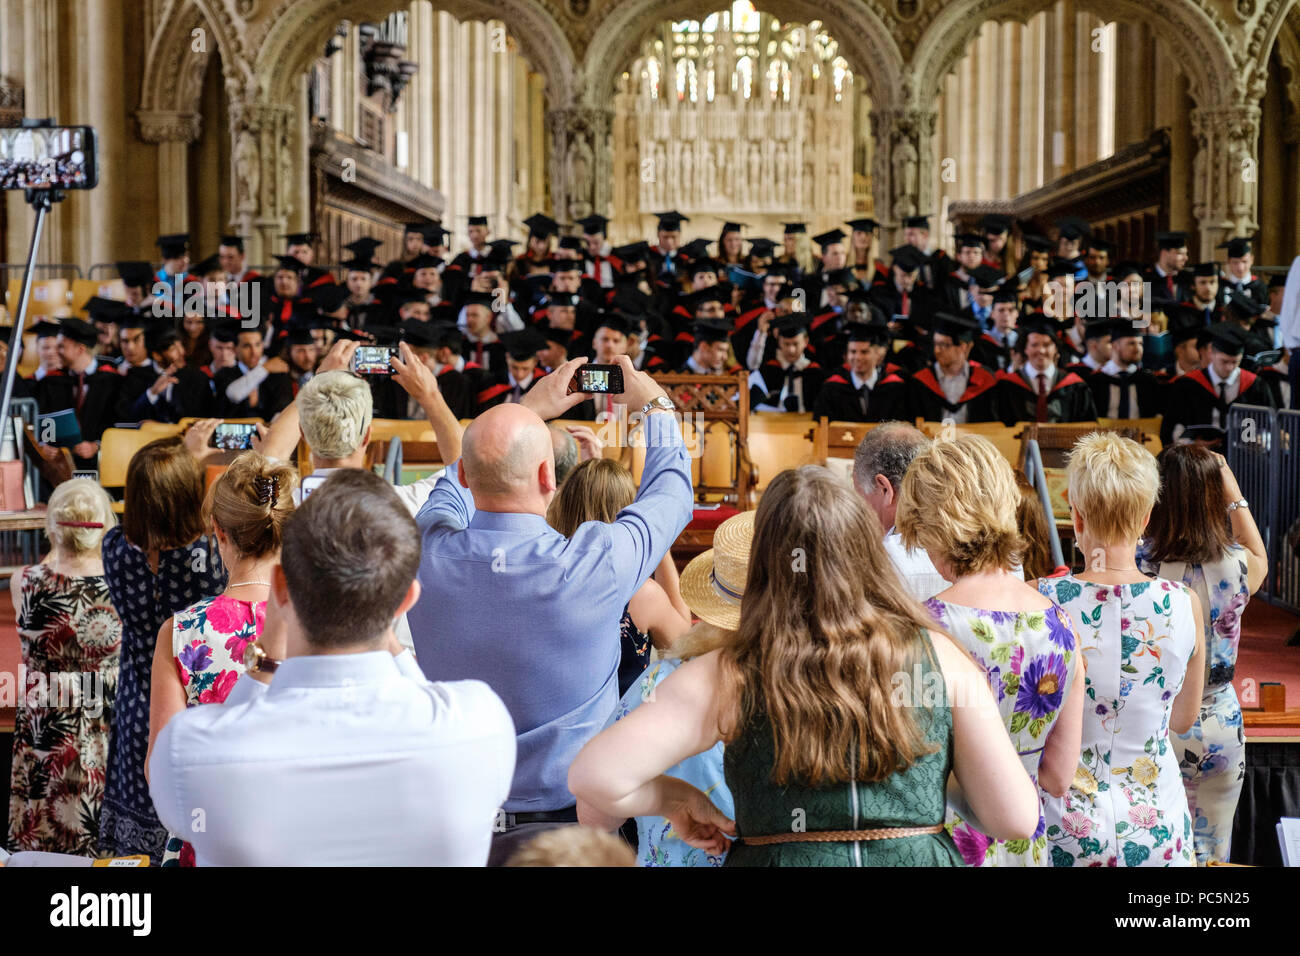 Abschlussfeier in der Kathedrale von Bristol Juli 2018. Absolventen auf der Bühne im Mörser-Boards und Kleider. Familien Fotos Stockfoto